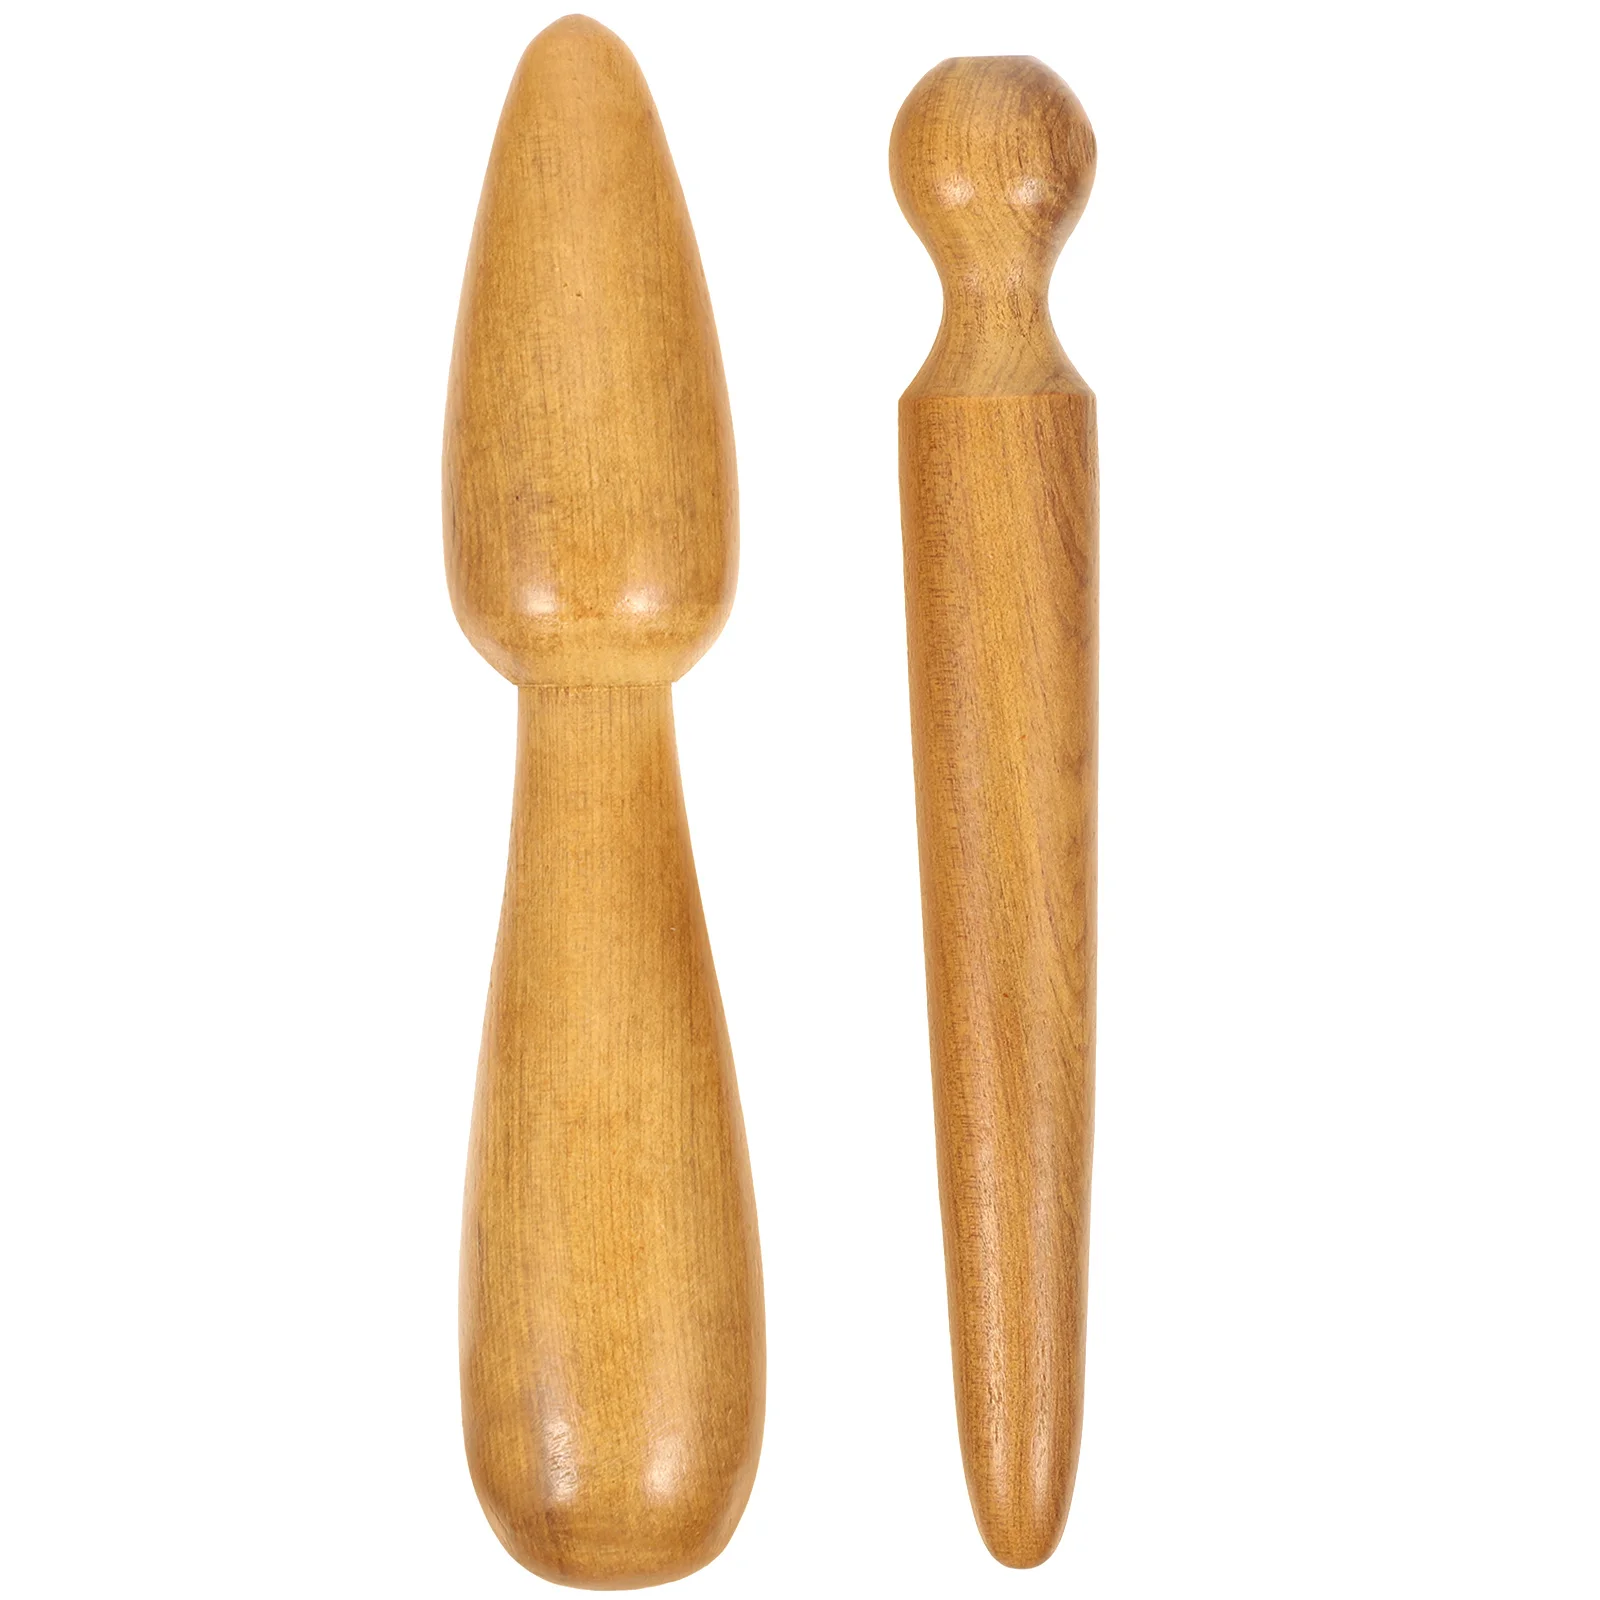 

Деревянные акупунктурные палочки, деревянные массажные палочки, массажные палочки для дома и улицы, деревянные массажные палочки